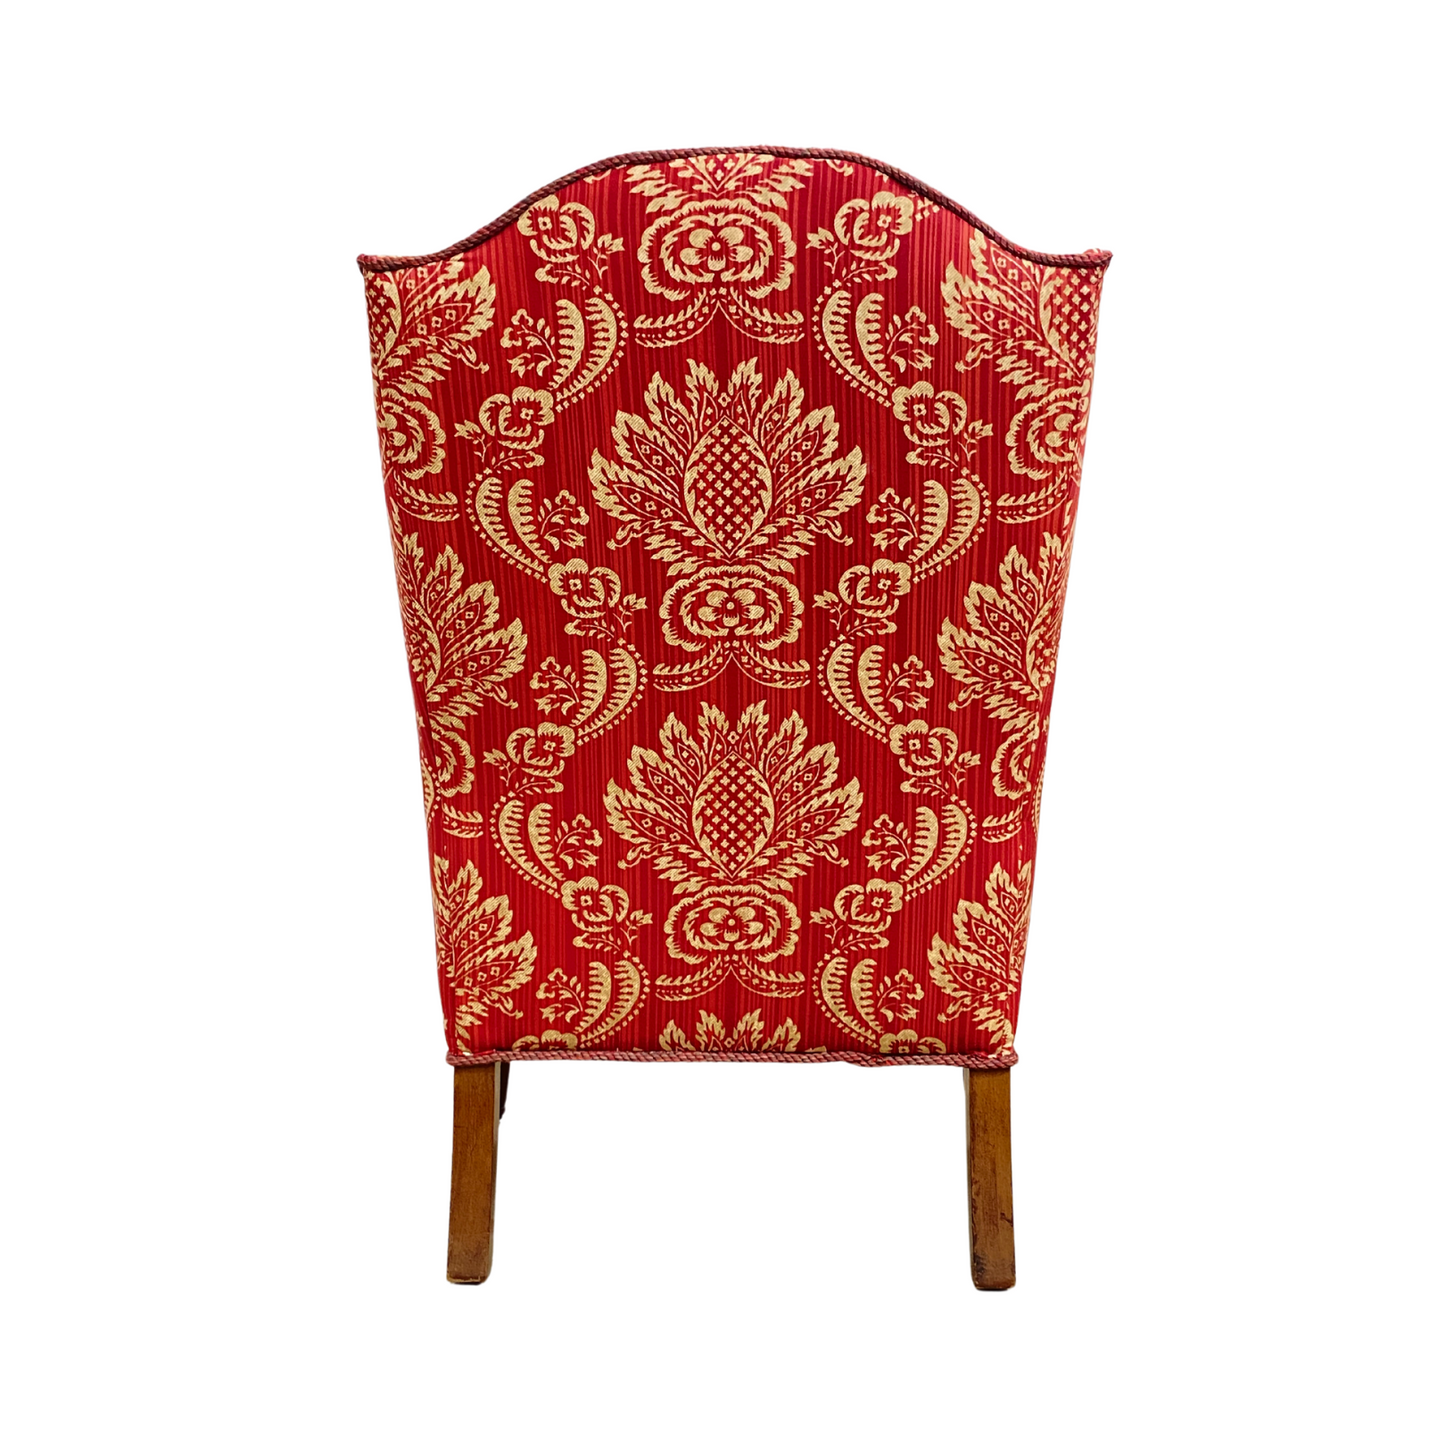 Queen Anne Williamsburg Down Cushion Wingback Chair